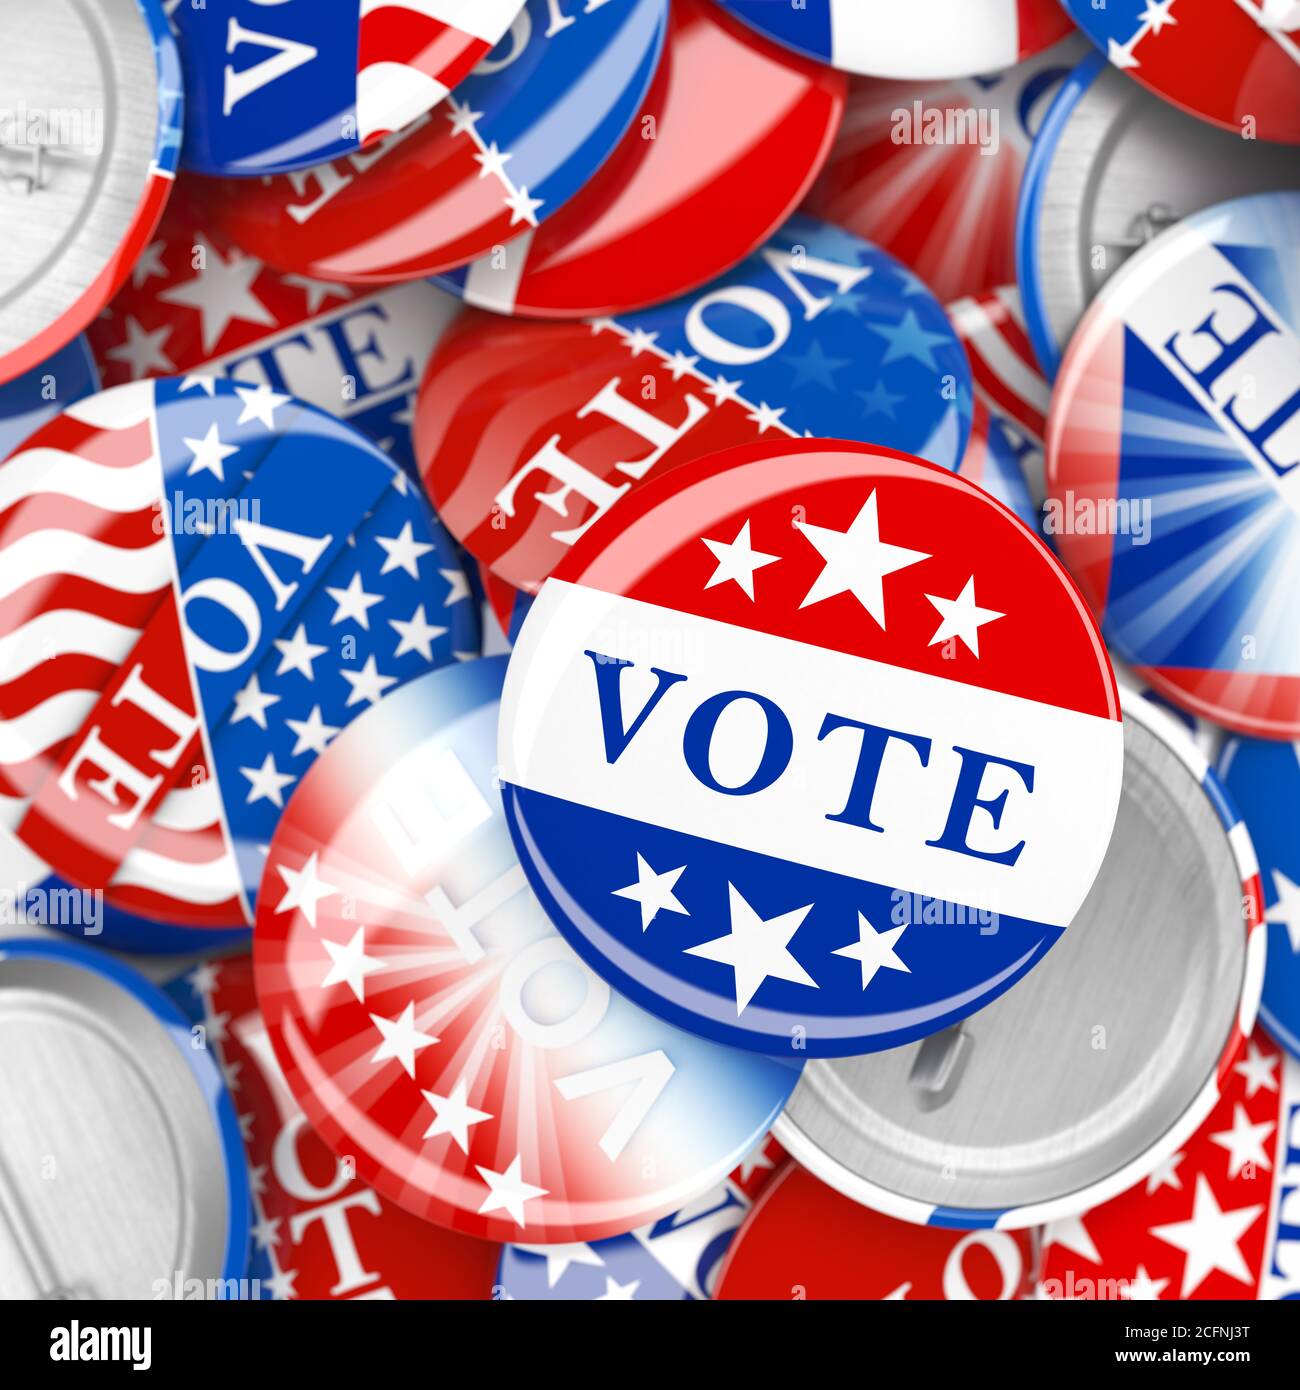 Stapel von amerikanischen rot, weiß und blau Vote PIN. Sammlung von Wahltasten für US-Präsidentschaftswahlen oder Kommunalwahlen. 3d-Rendering. Stockfoto